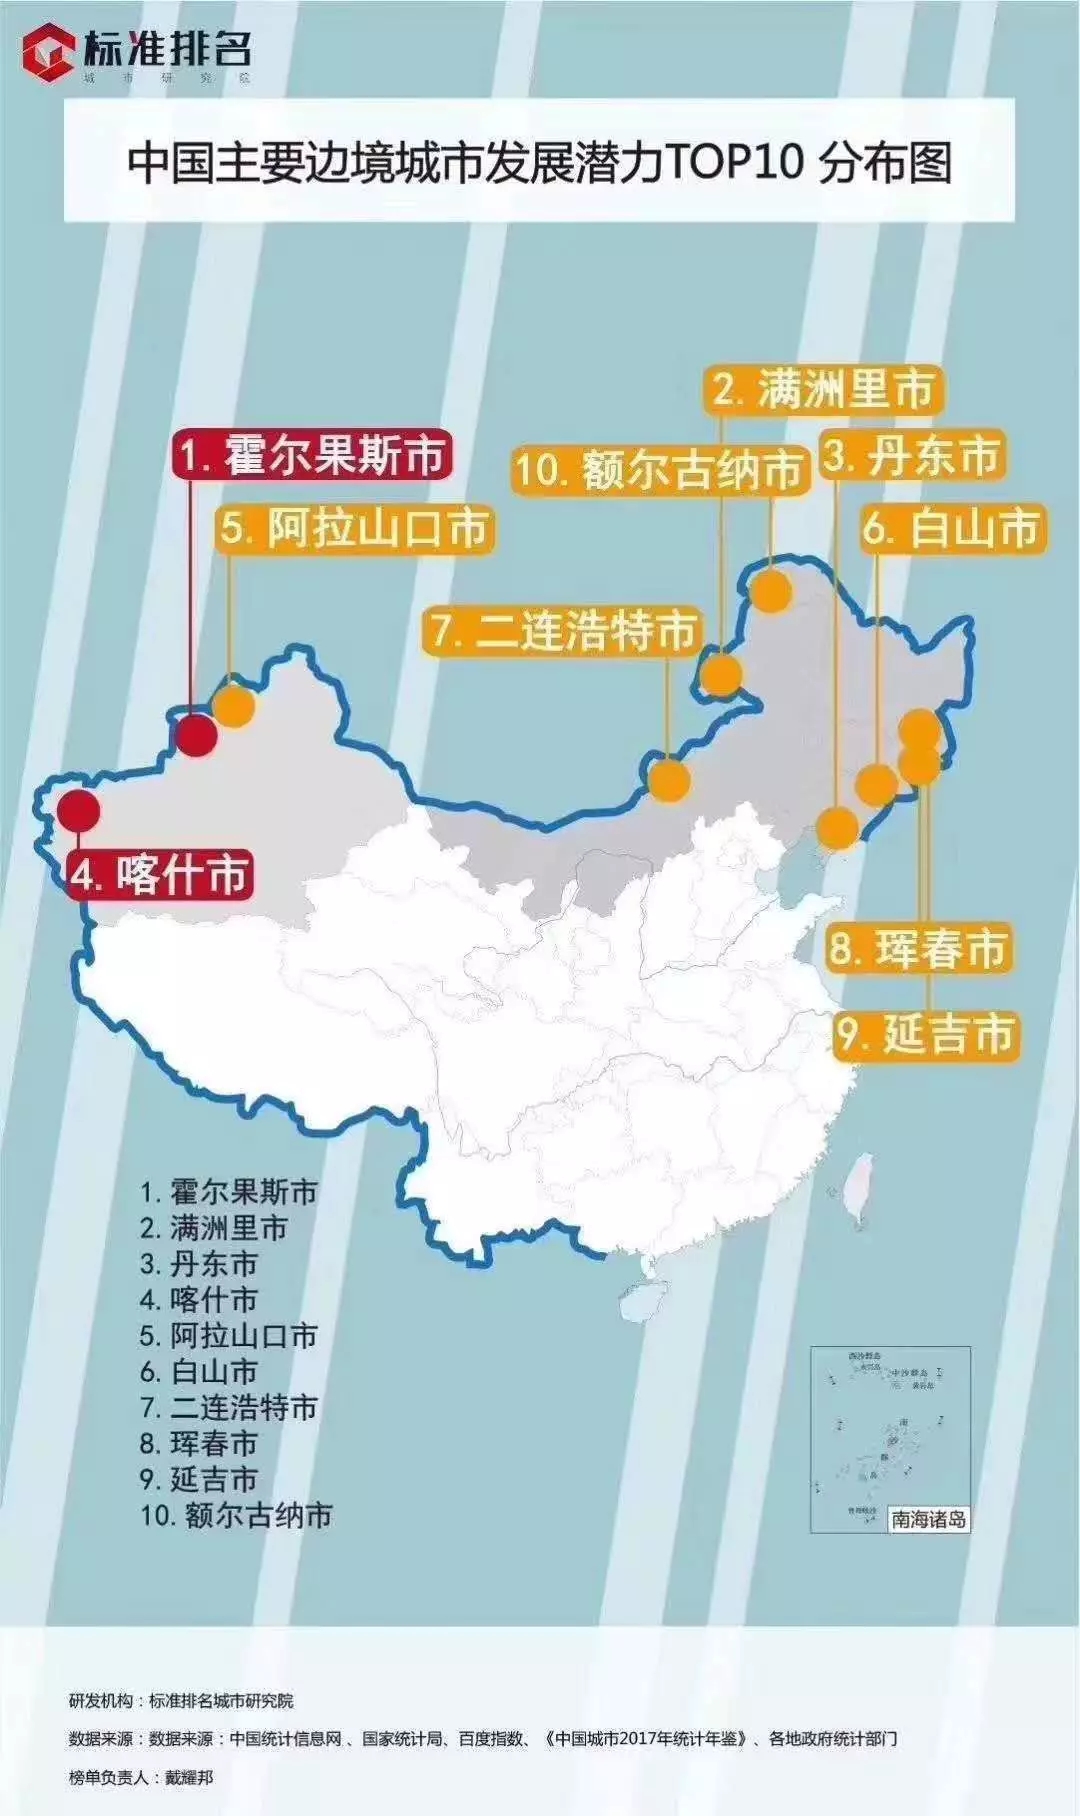 中国主要边境城市发展潜力TOP10分布图